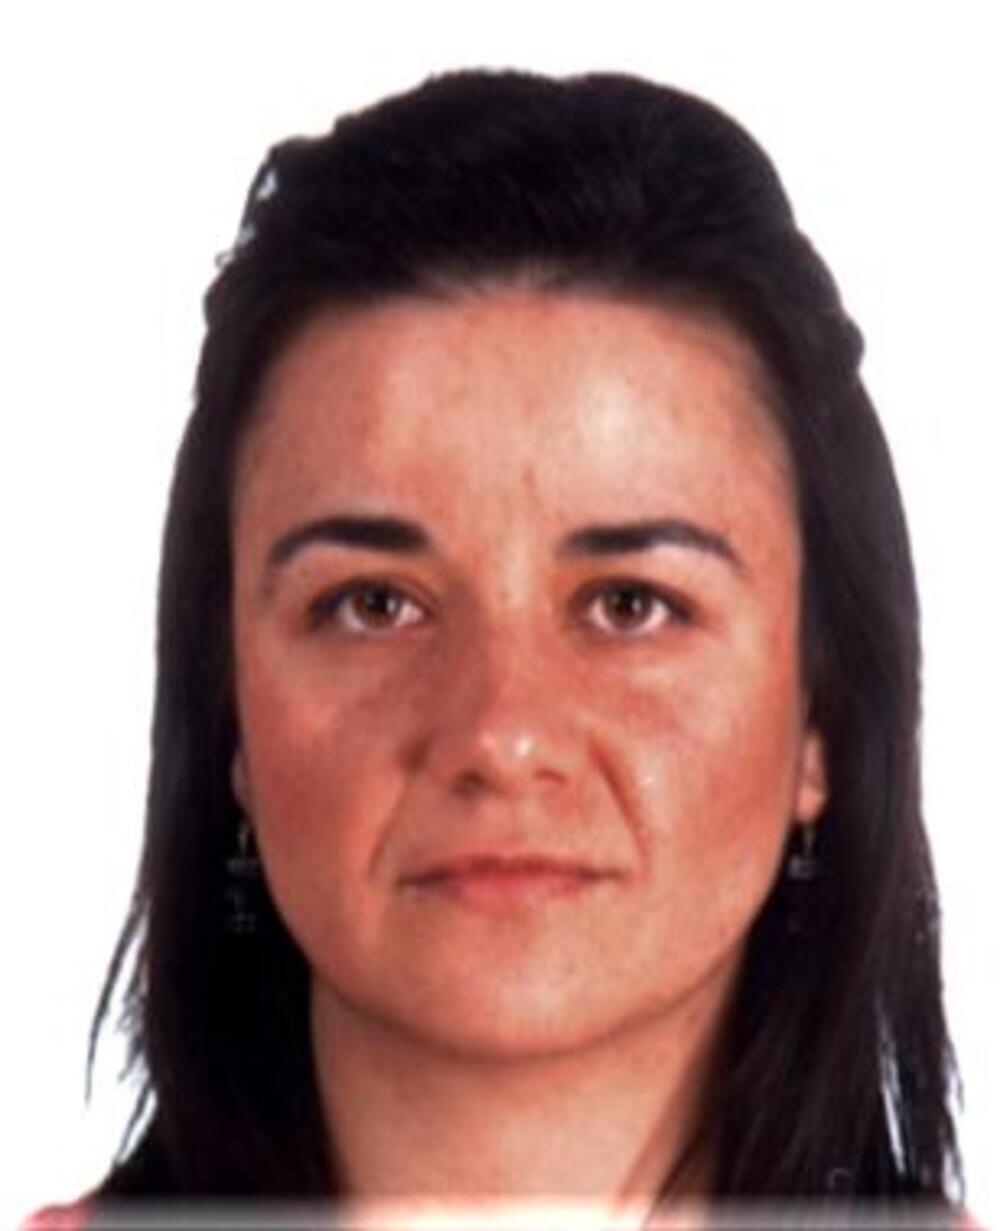 Siguen sin pistas del paradero de Ana Isabel Picazo | Noticias La Tribuna  de Albacete